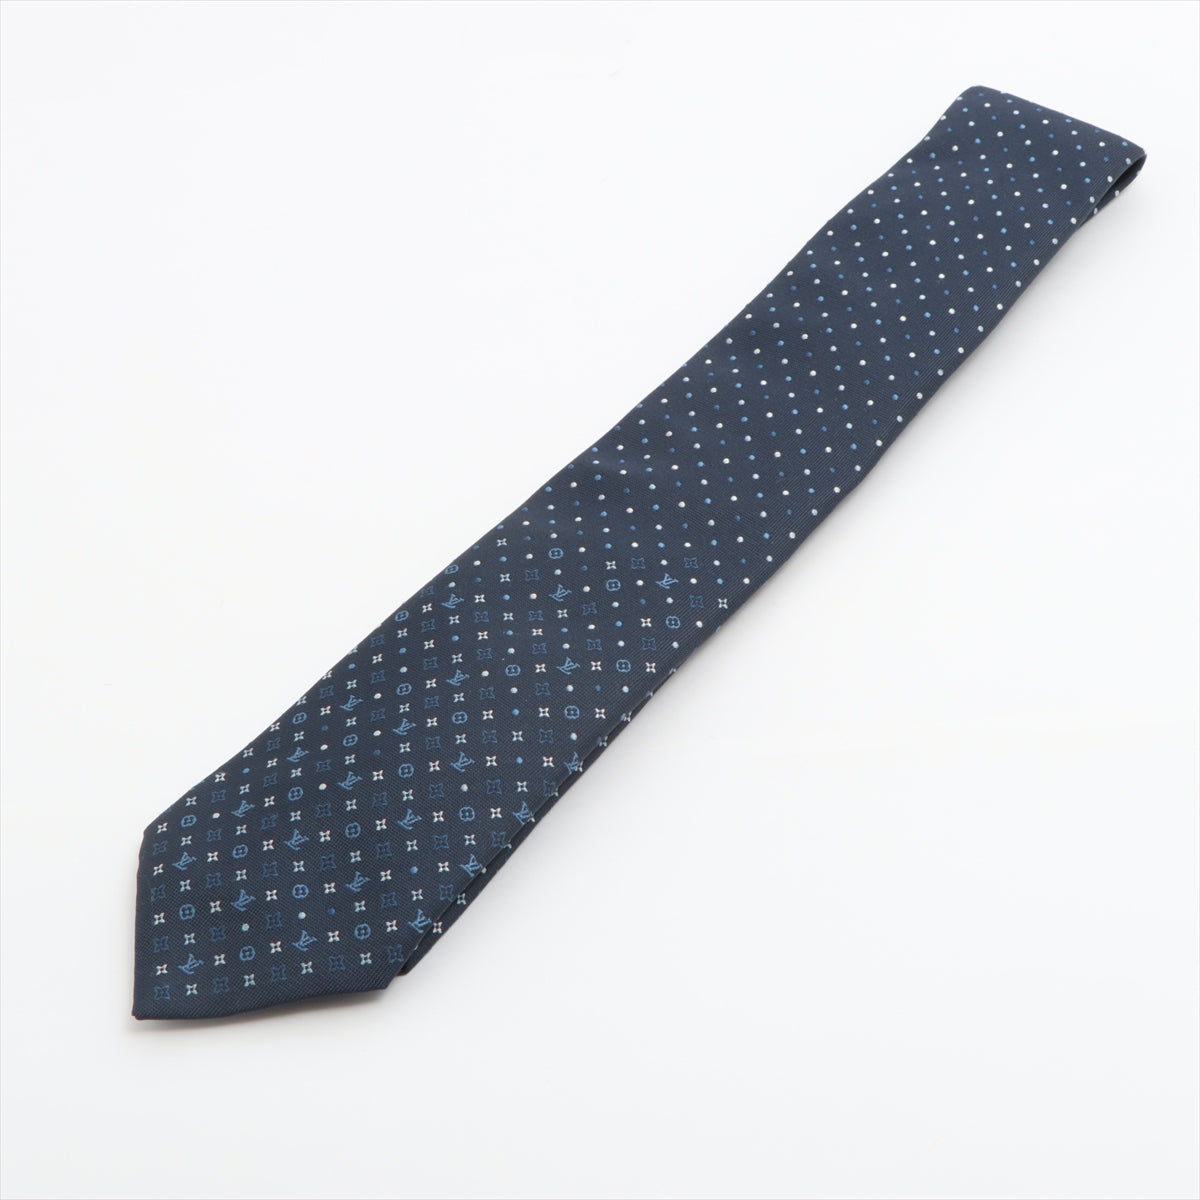 Louis Vuitton M76844 monogram gradient dots 8CM OS5202 Necktie Silk Navy blue